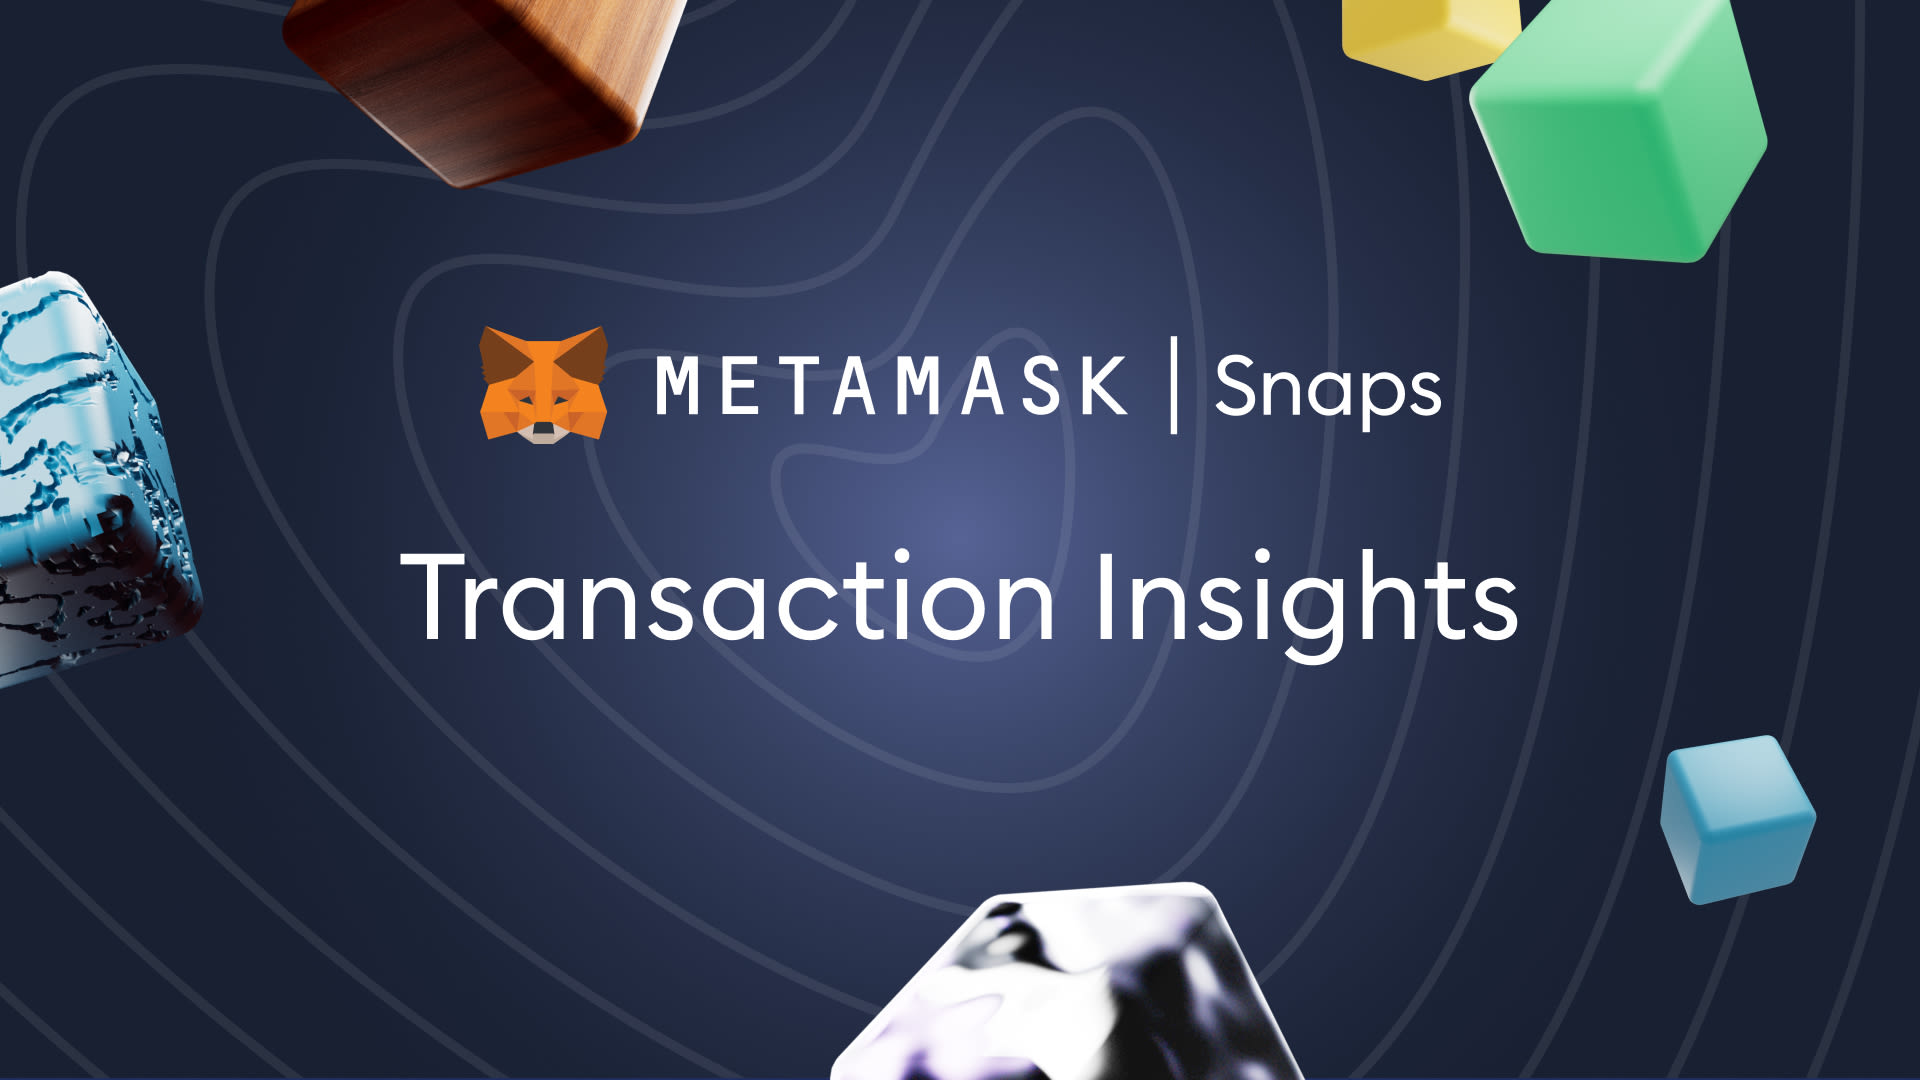 Metamask snaps transacciones